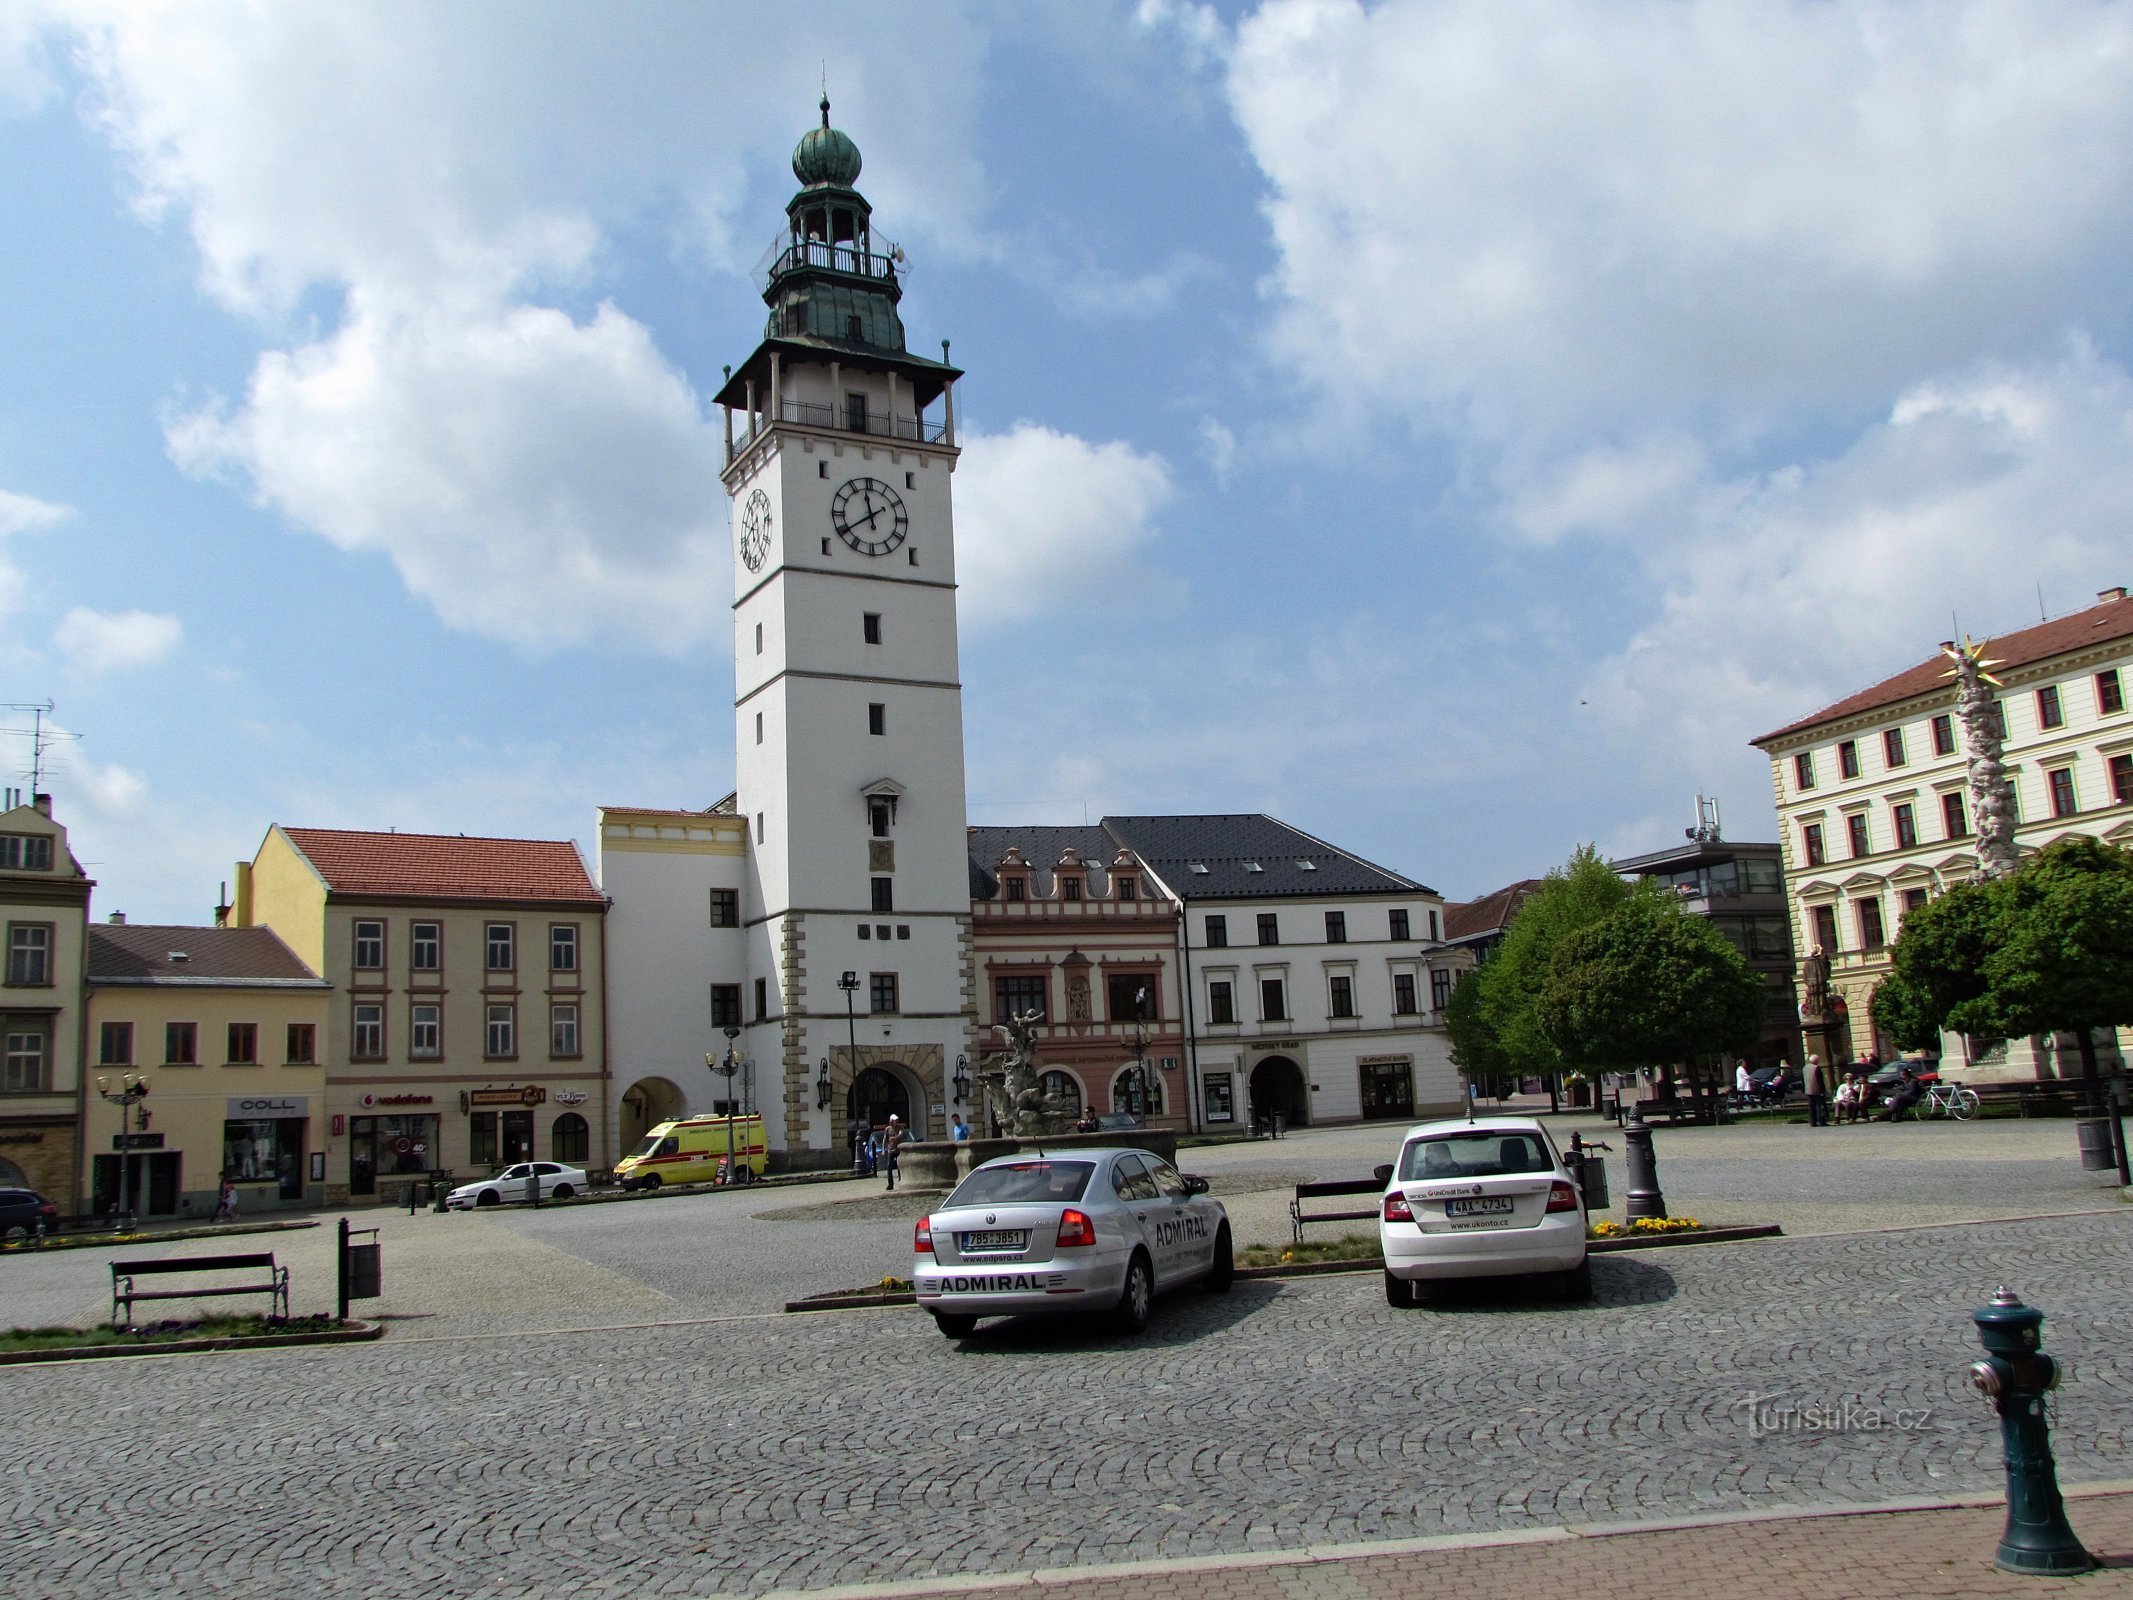 Turm und Rathaus vom Platz aus